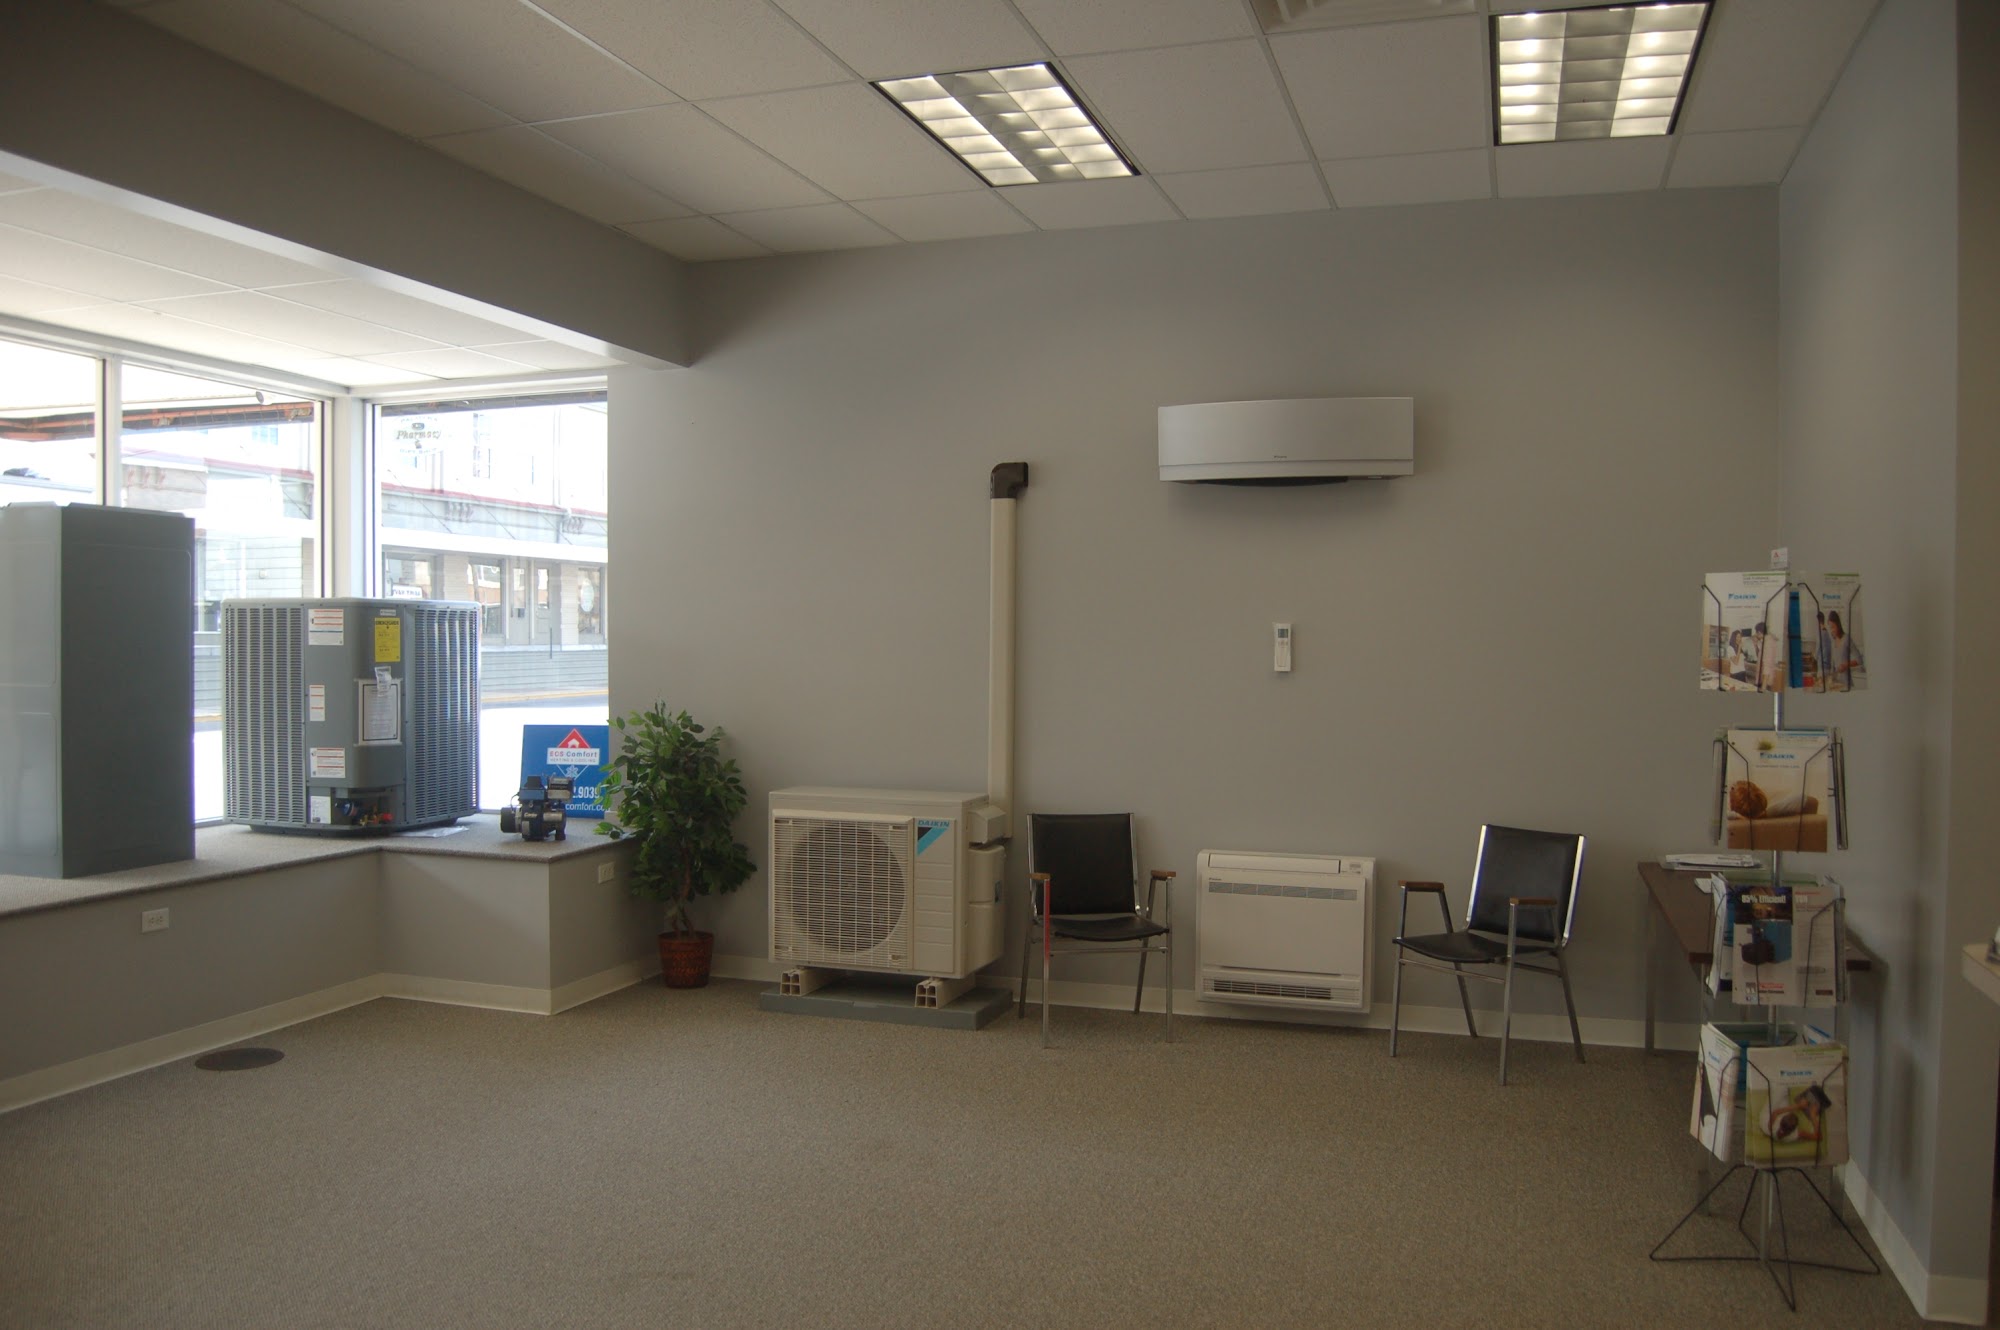 ECS Comfort Heating & Cooling